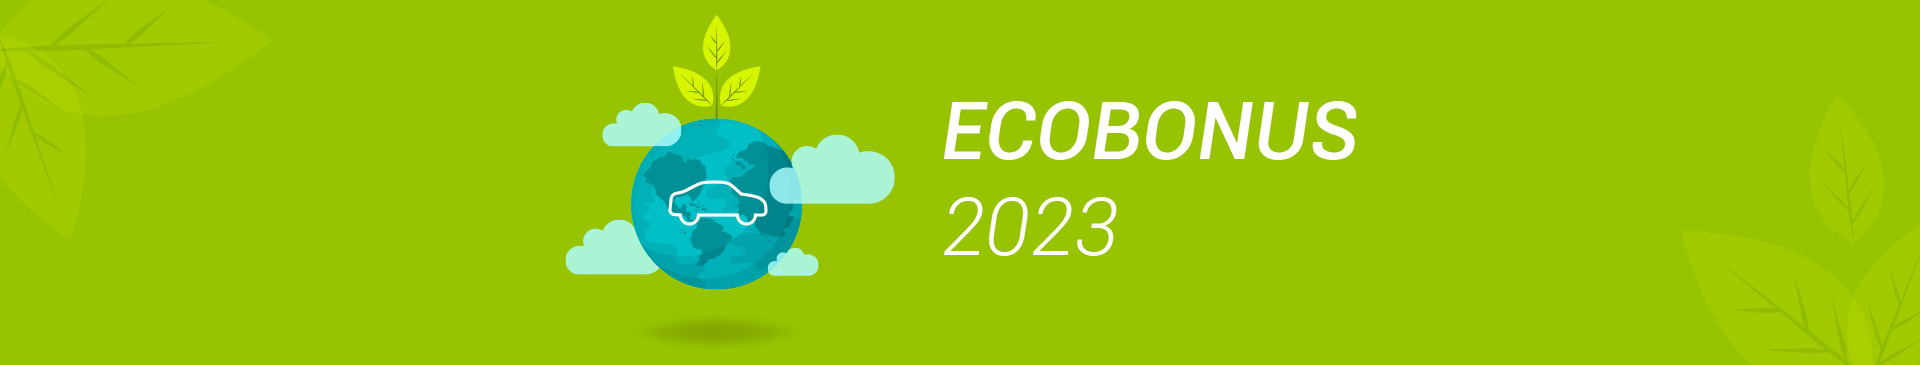 Ecobonus 2023 - Eurocar Firenze 